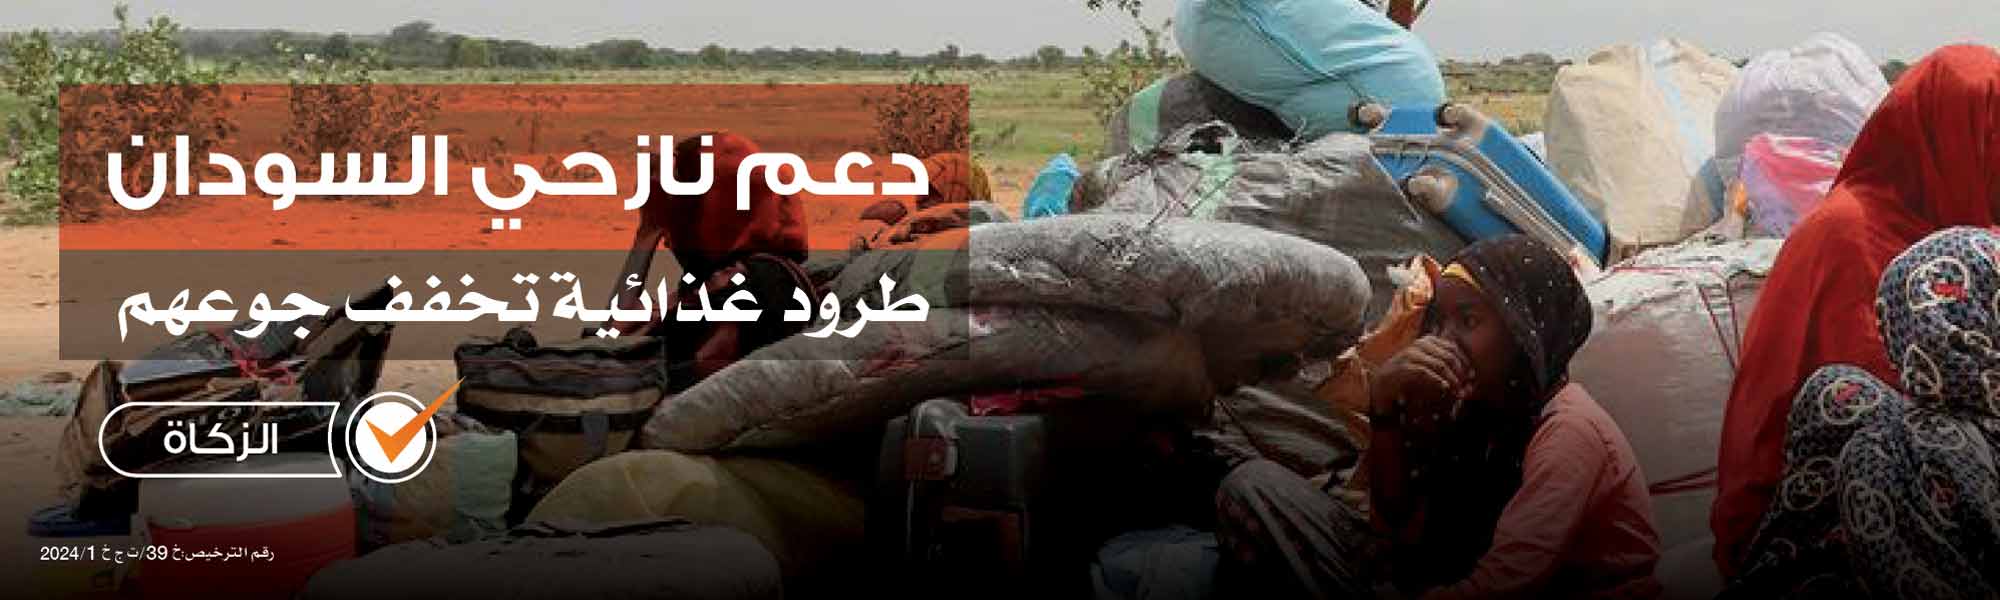  أغيثوا السودان